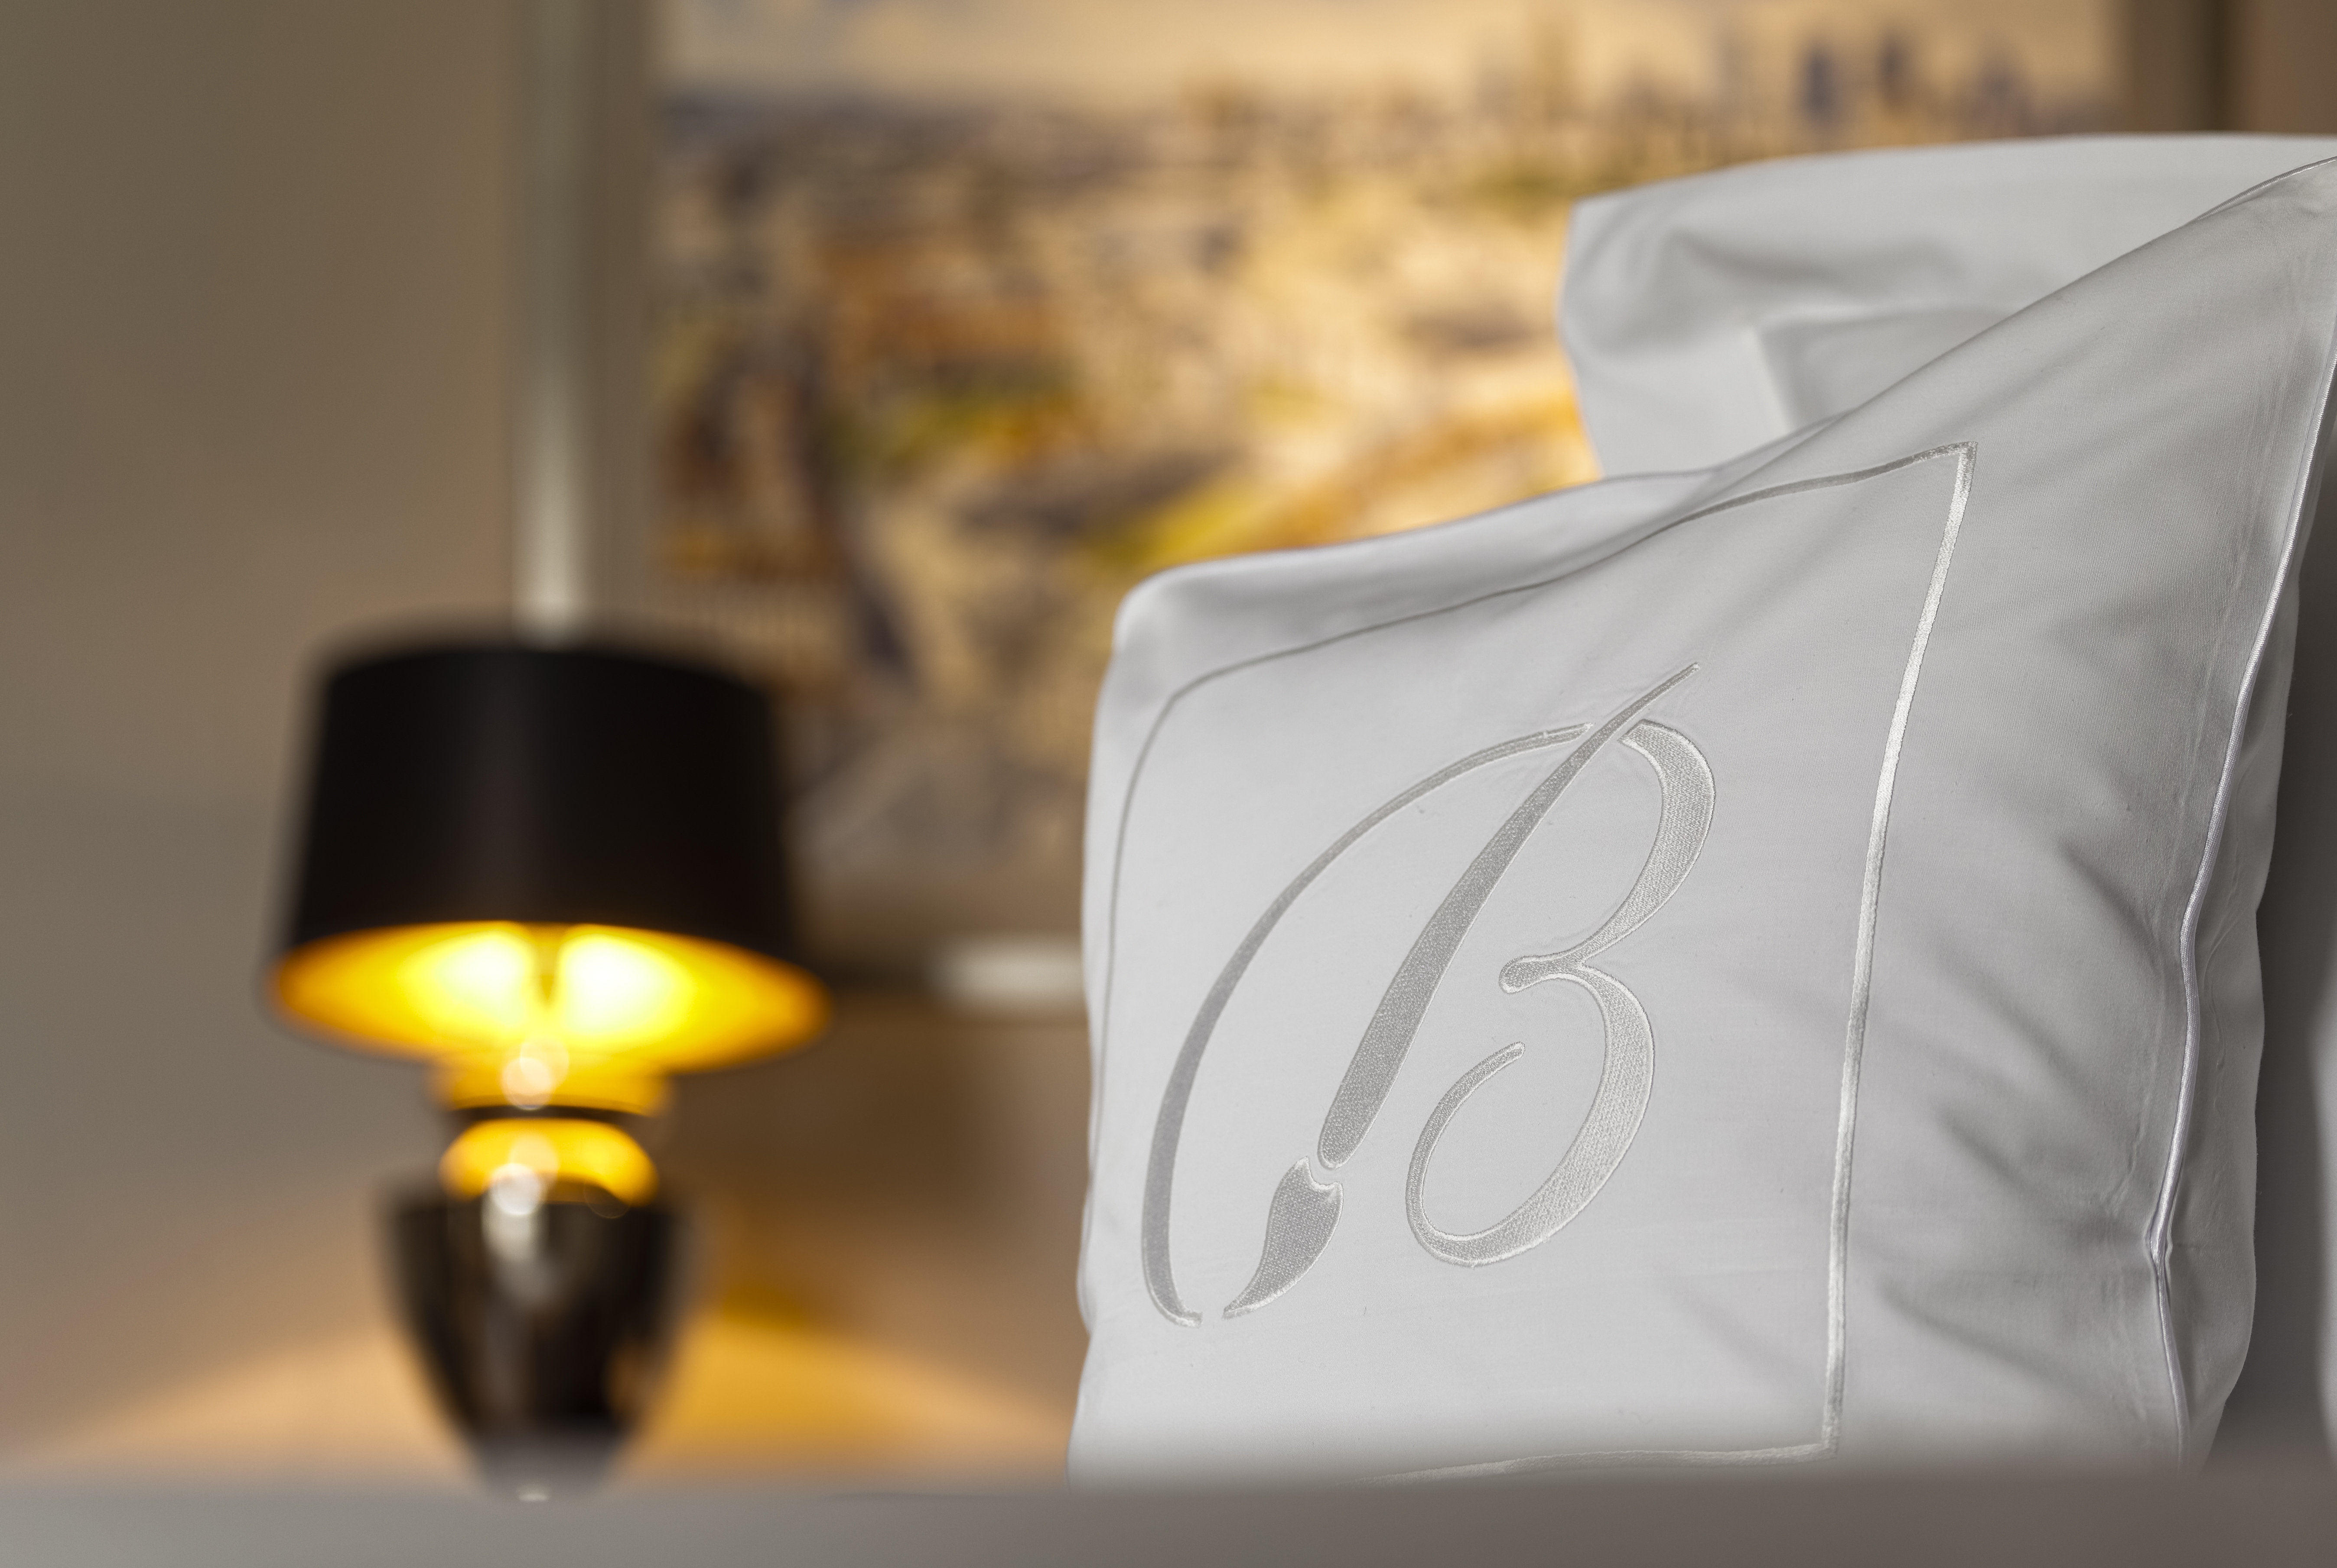 Bellotto Hotel pillow